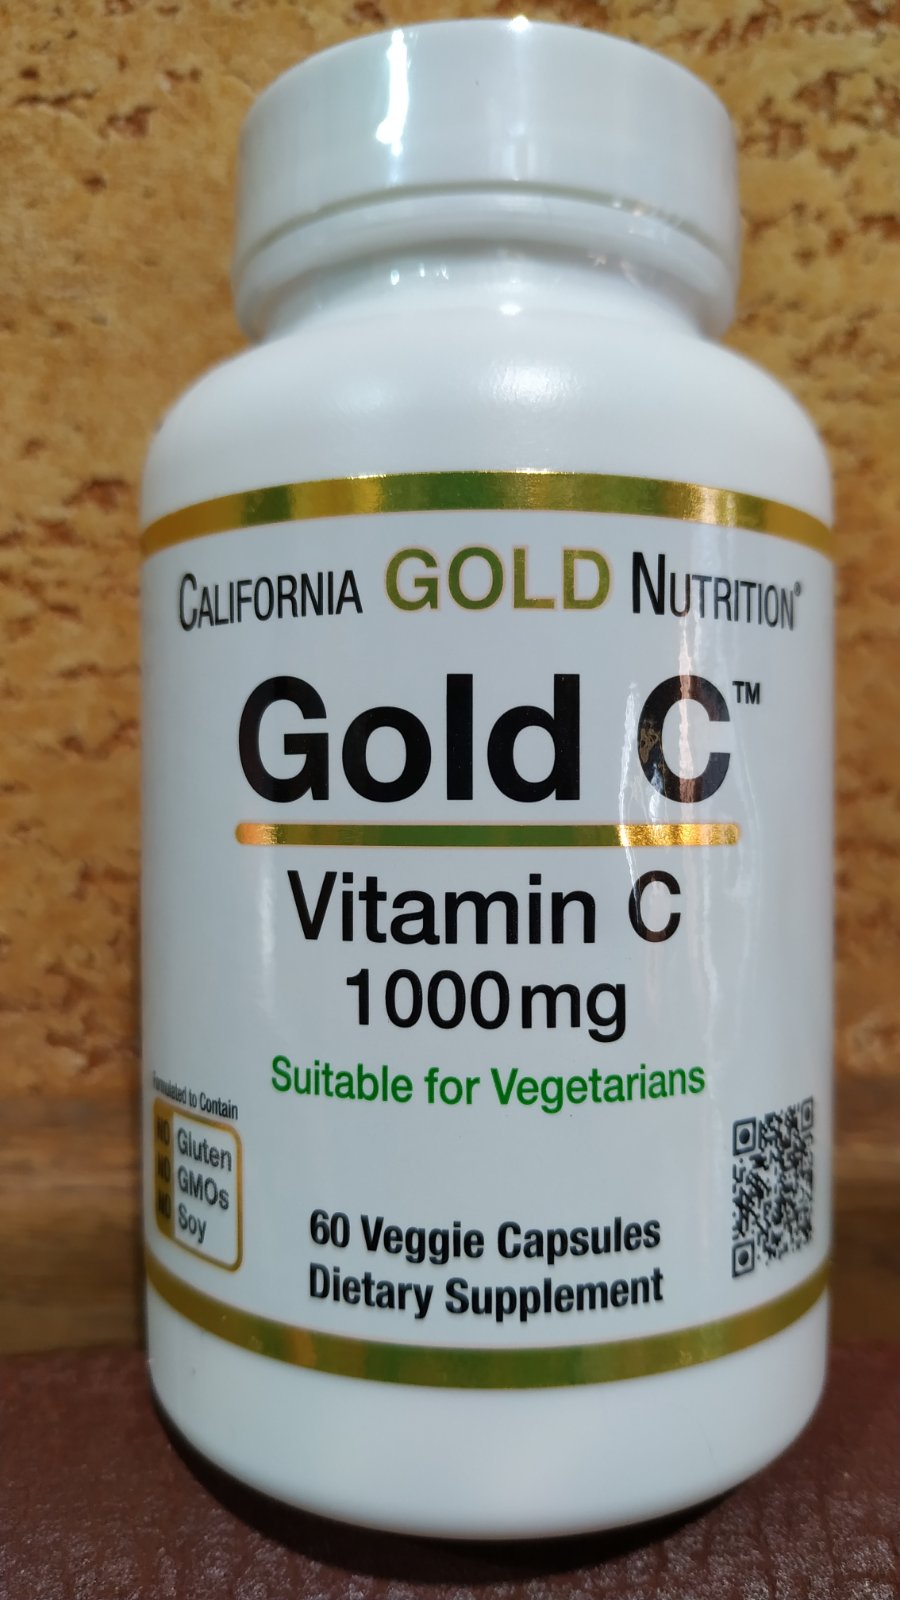 Витамин С California Gold Nutrition Vitamin C 1000 mg аскорбиновая кислота, иммунитет, 60 капсул, Америка Калифорния